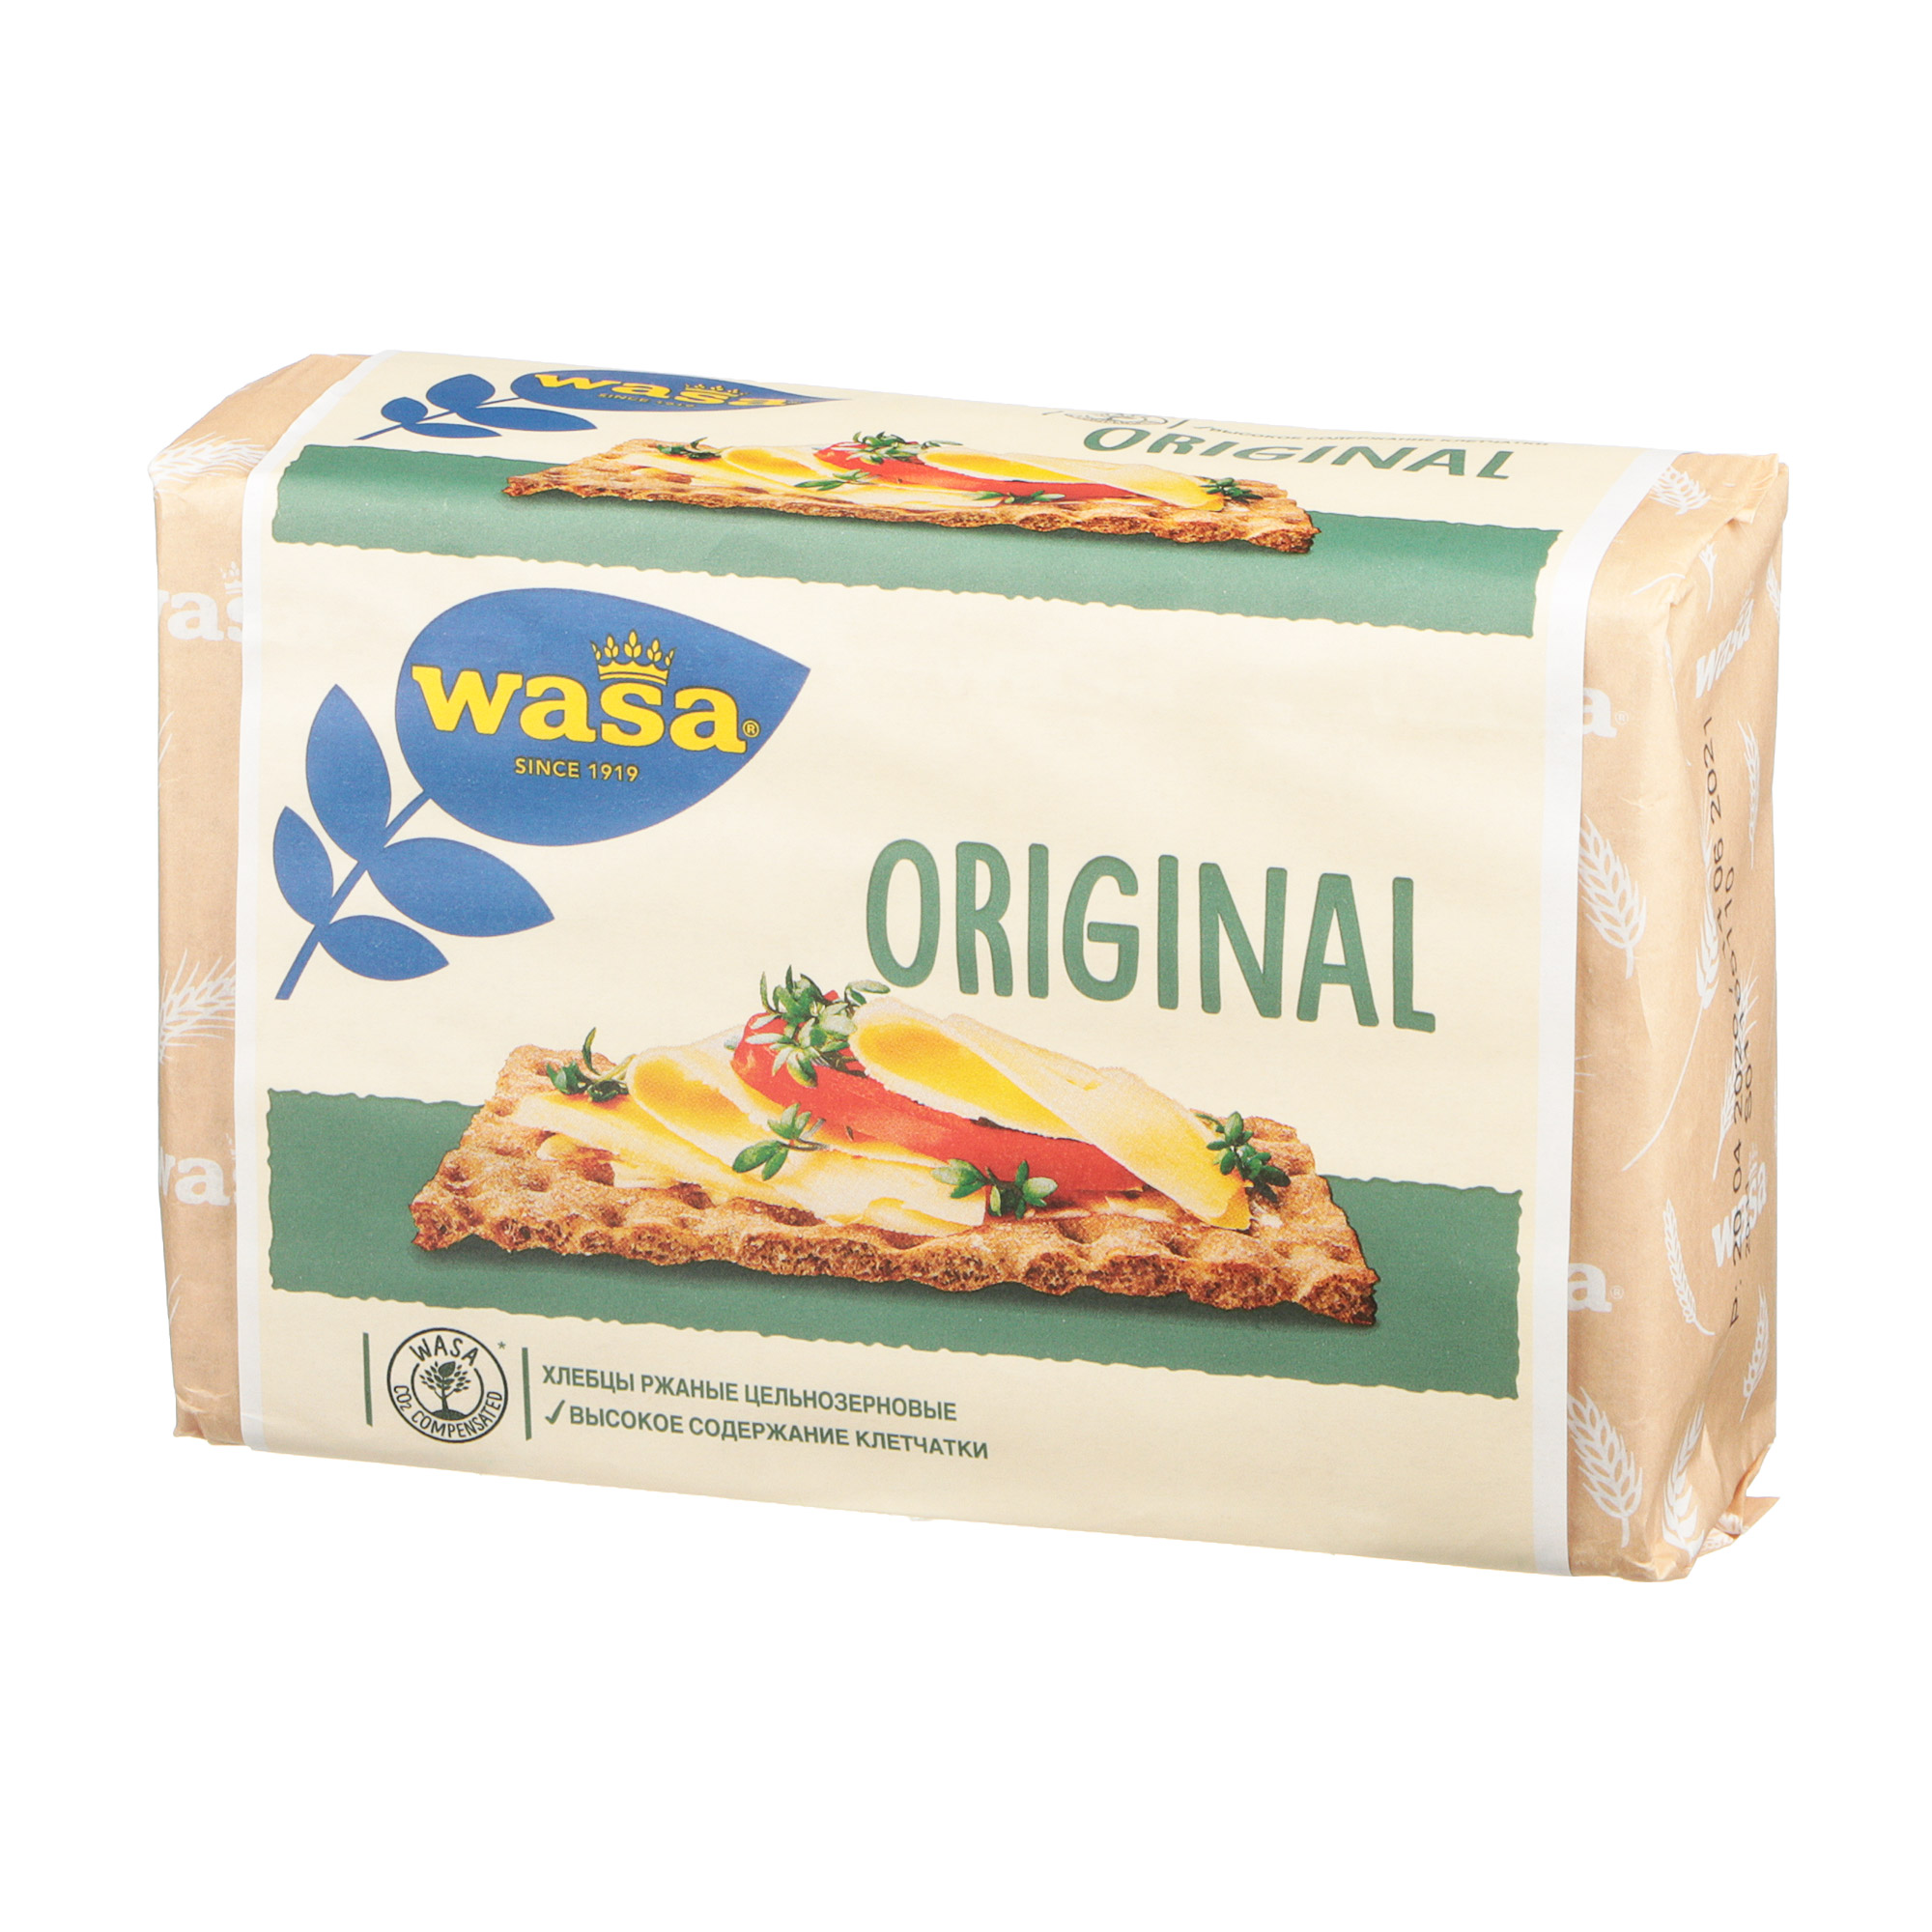 Хлебцы ржаные Wasa Original цельнозерновые 275 г хлебцы пшеничные тонкие wasa с кунжутом 200 гр